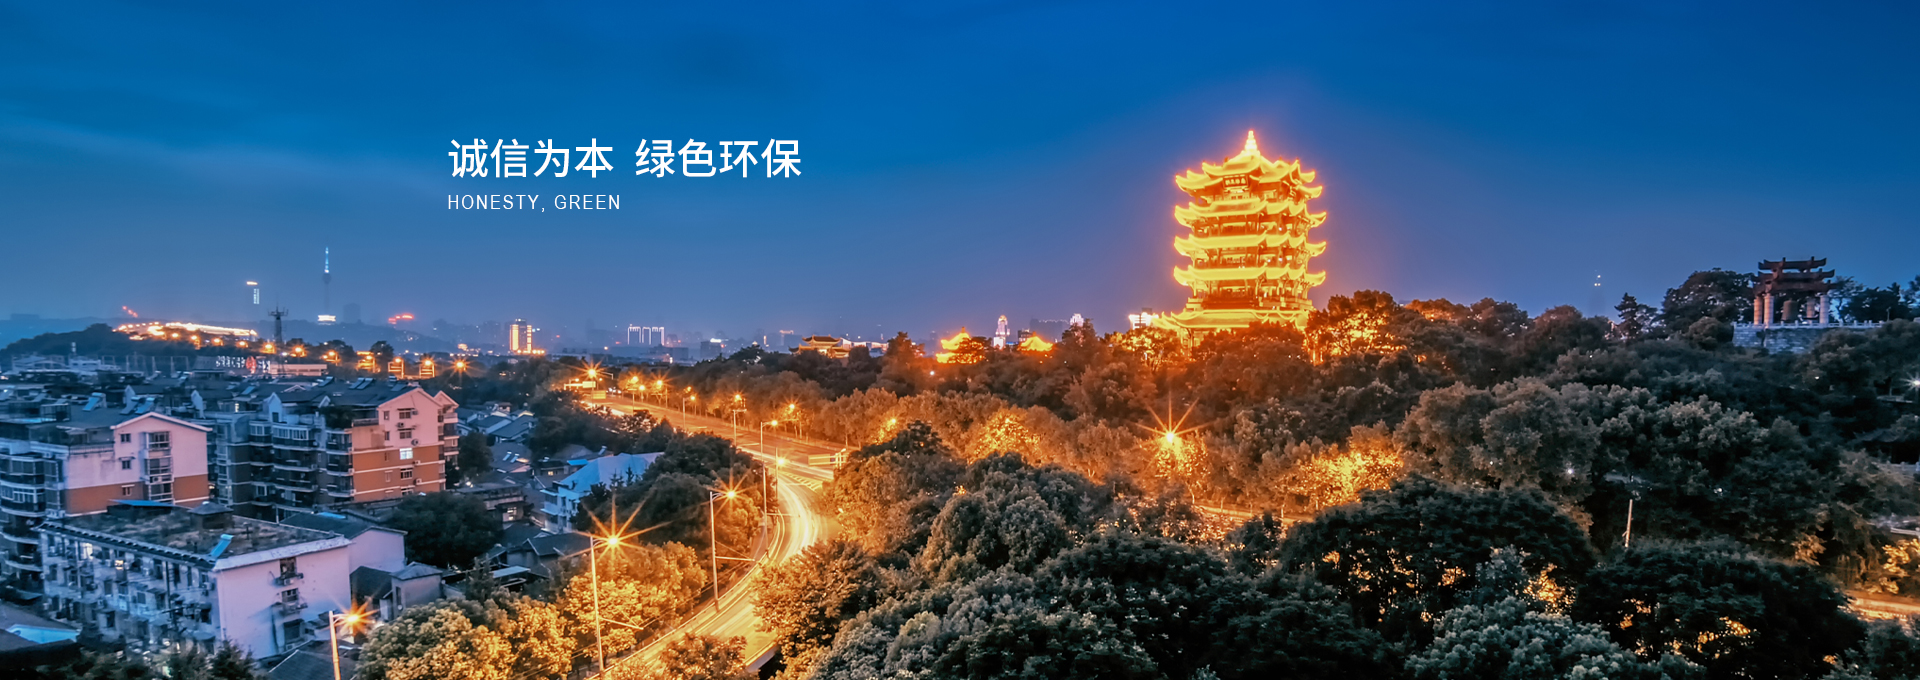 武漢市創科照明設計工程有限公司